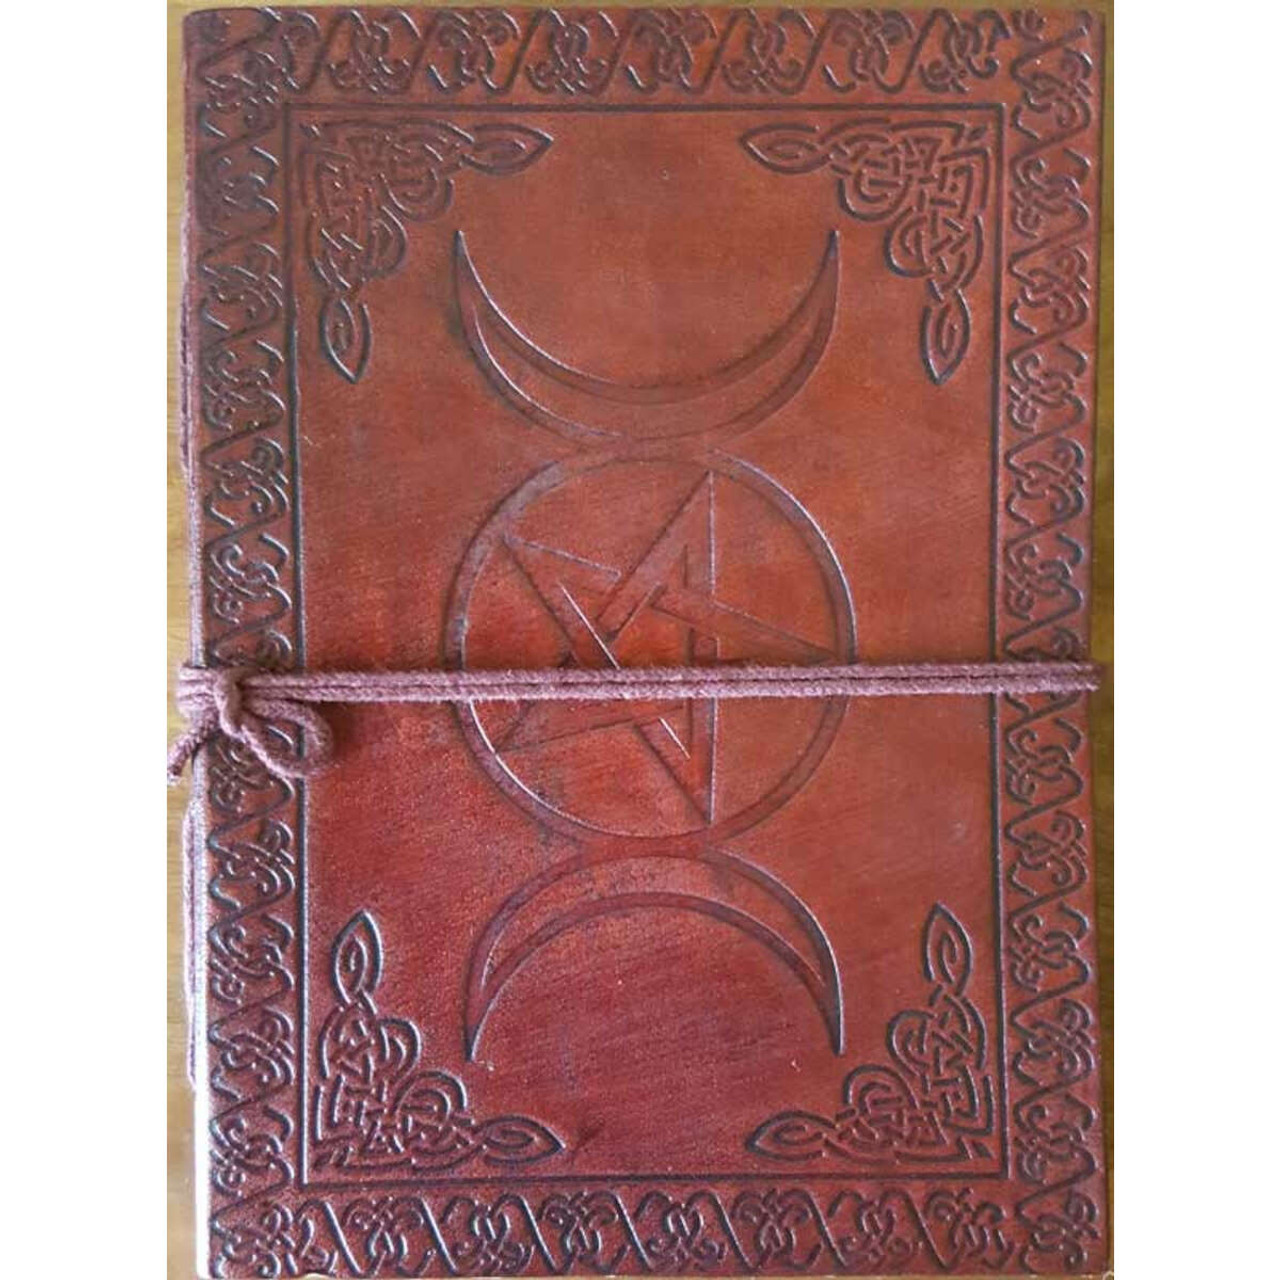 Triple Moon Pentagram Blank Leather Journal w/ Cord 5" x 7"